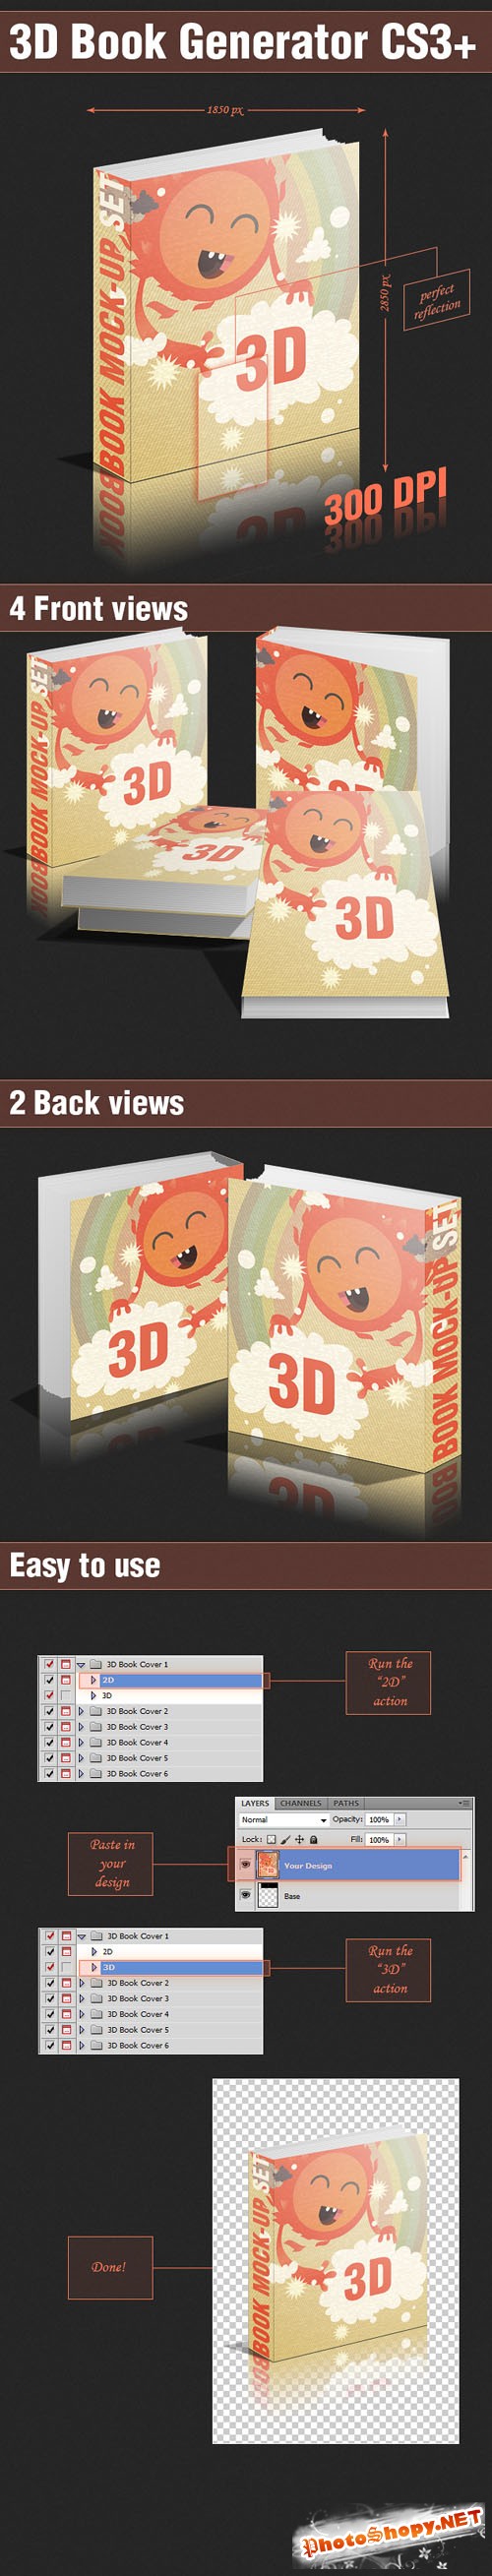 Designtnt - 3D Book Generator PS Actions